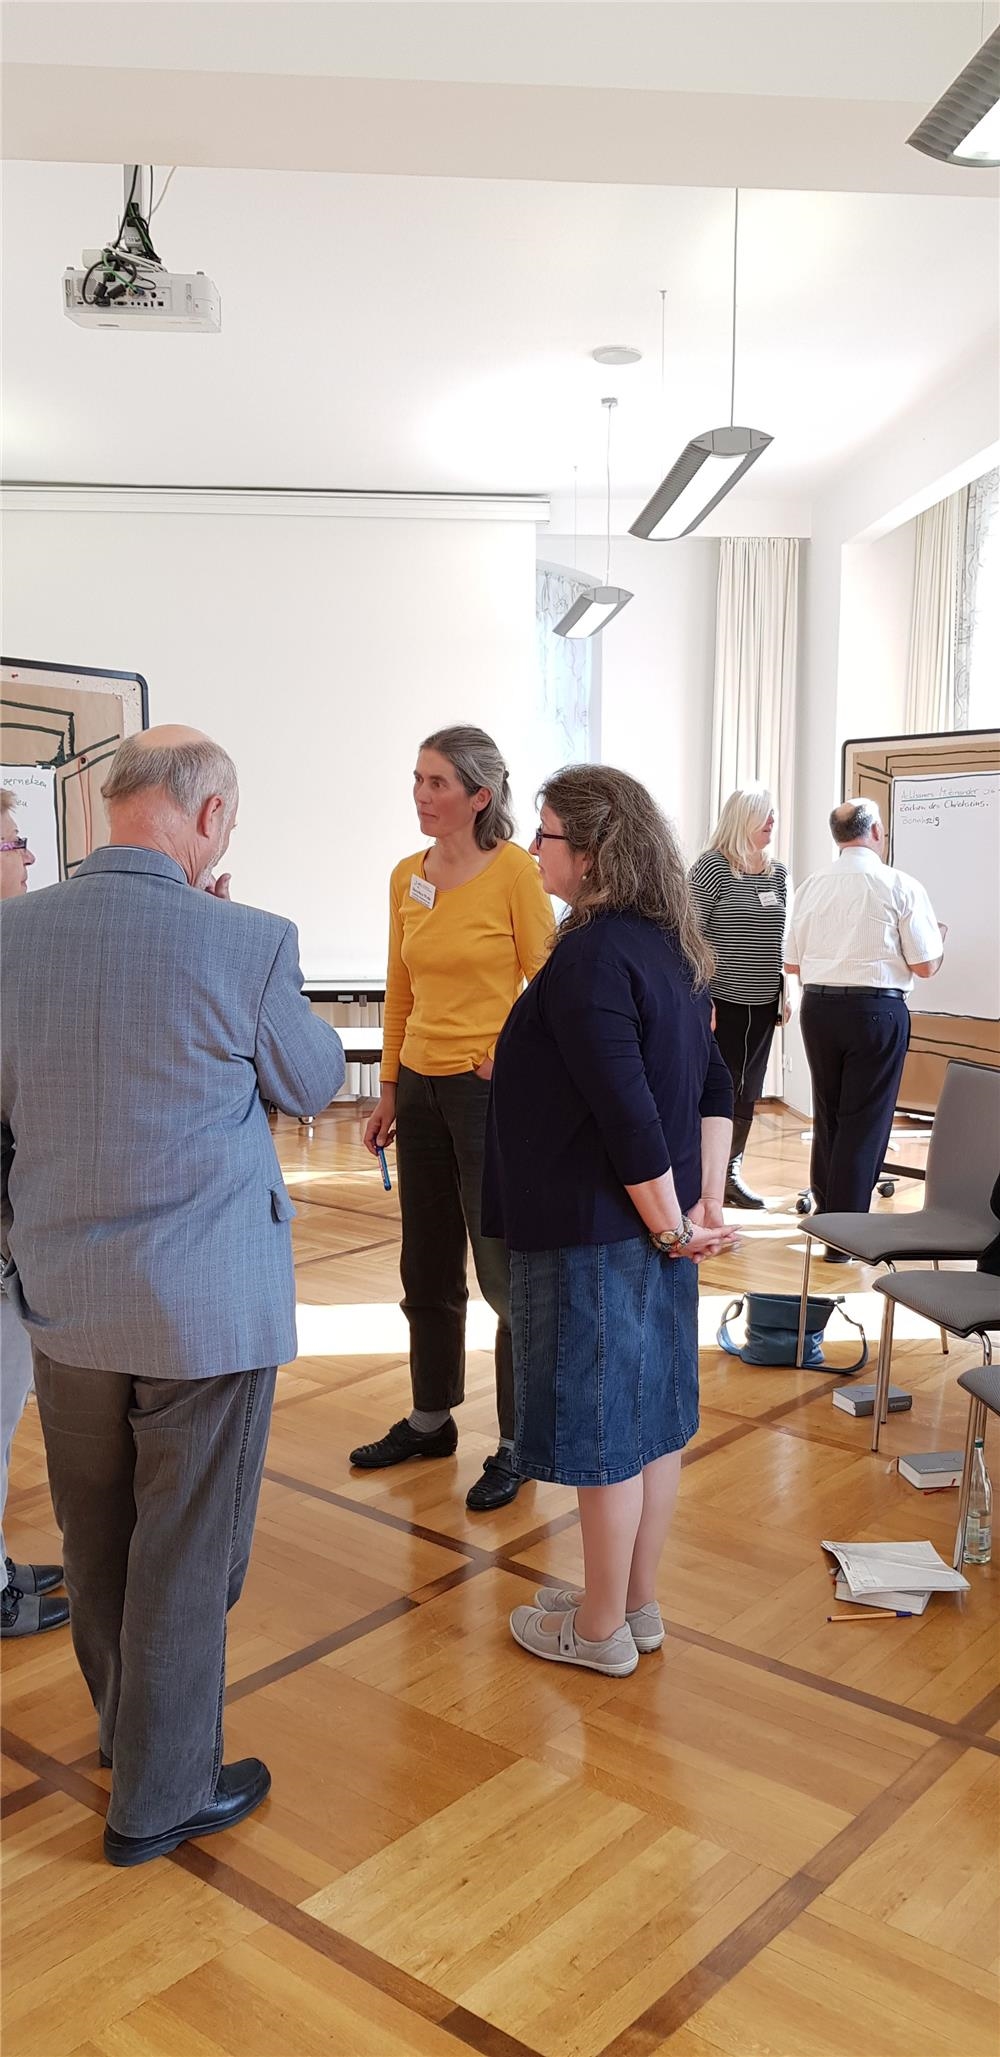 Dorothea Welle & Hilgedard Grosch - Treffen der Dekanatsverantwortlichen 2018 